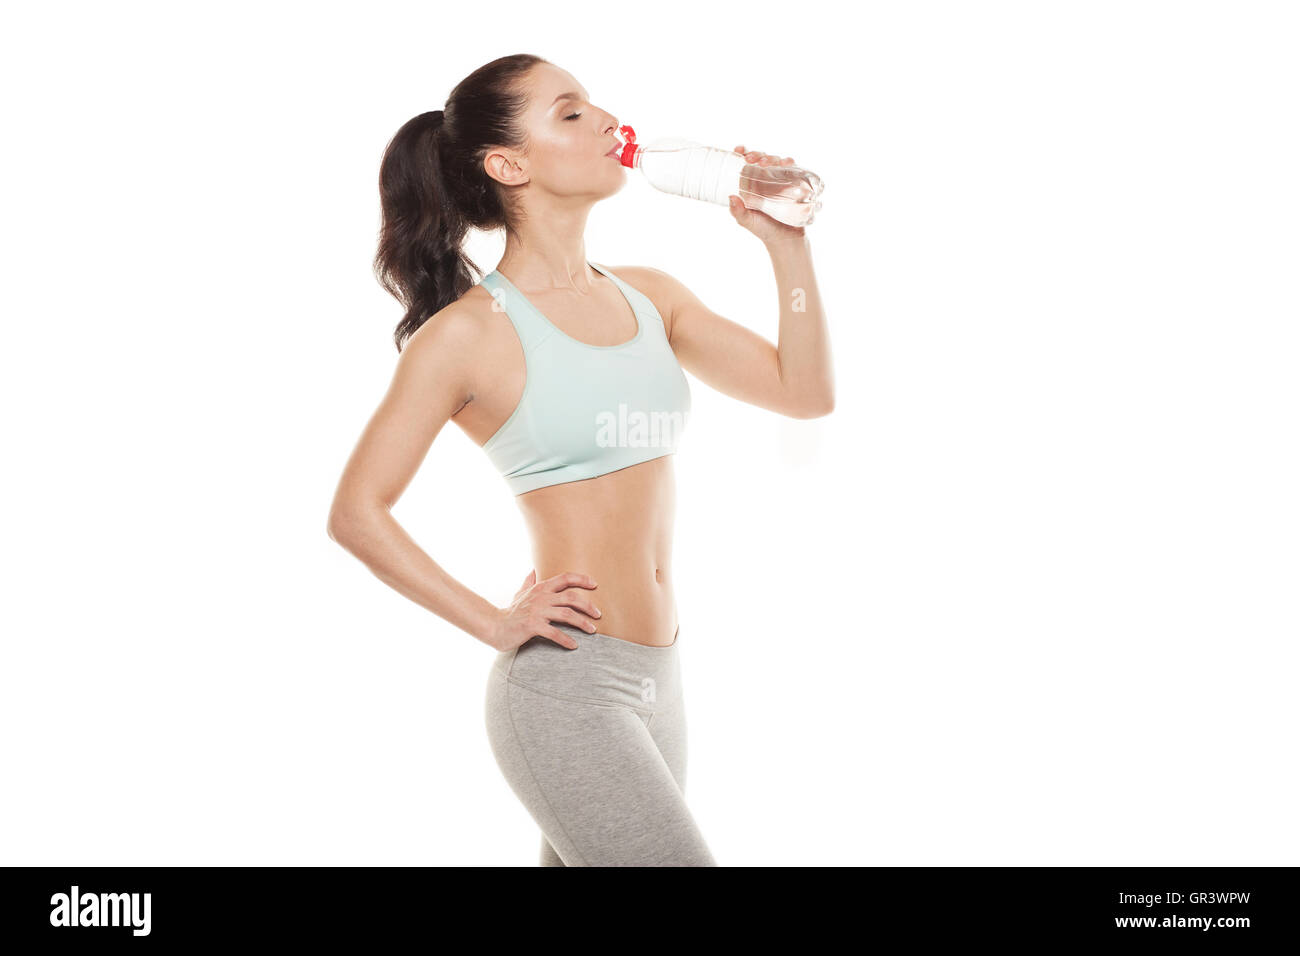 Sportliches Girl Trinkwasser aus einer Flasche nach eine Workout, Fitness-training, auf weißem Hintergrund isoliert Stockfoto